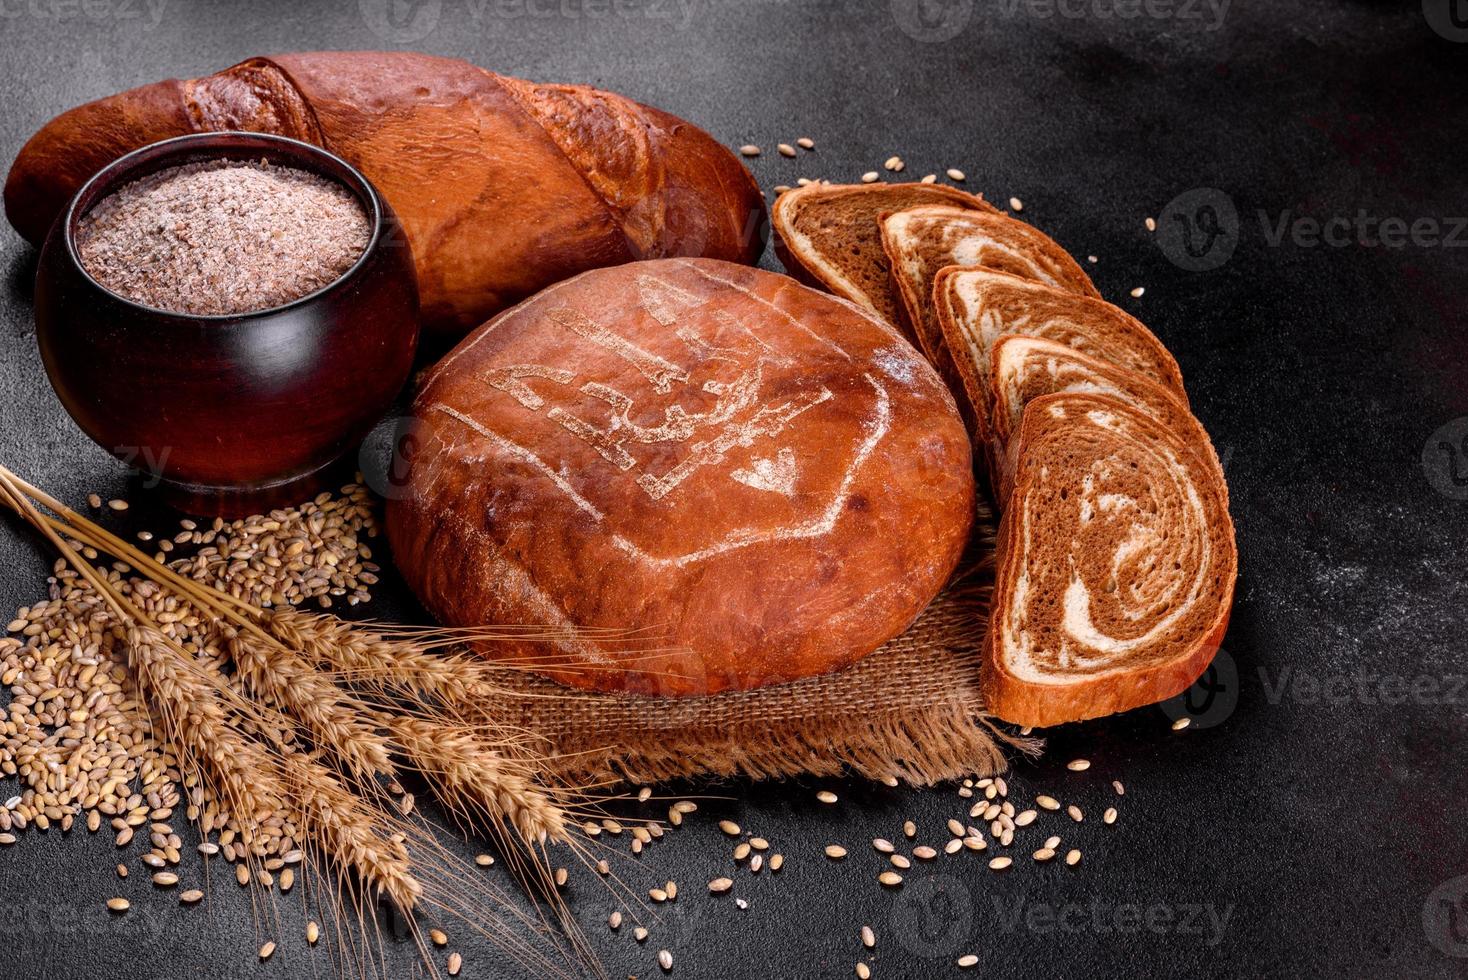 pão integral fresco assado com brasão de armas da Ucrânia foto